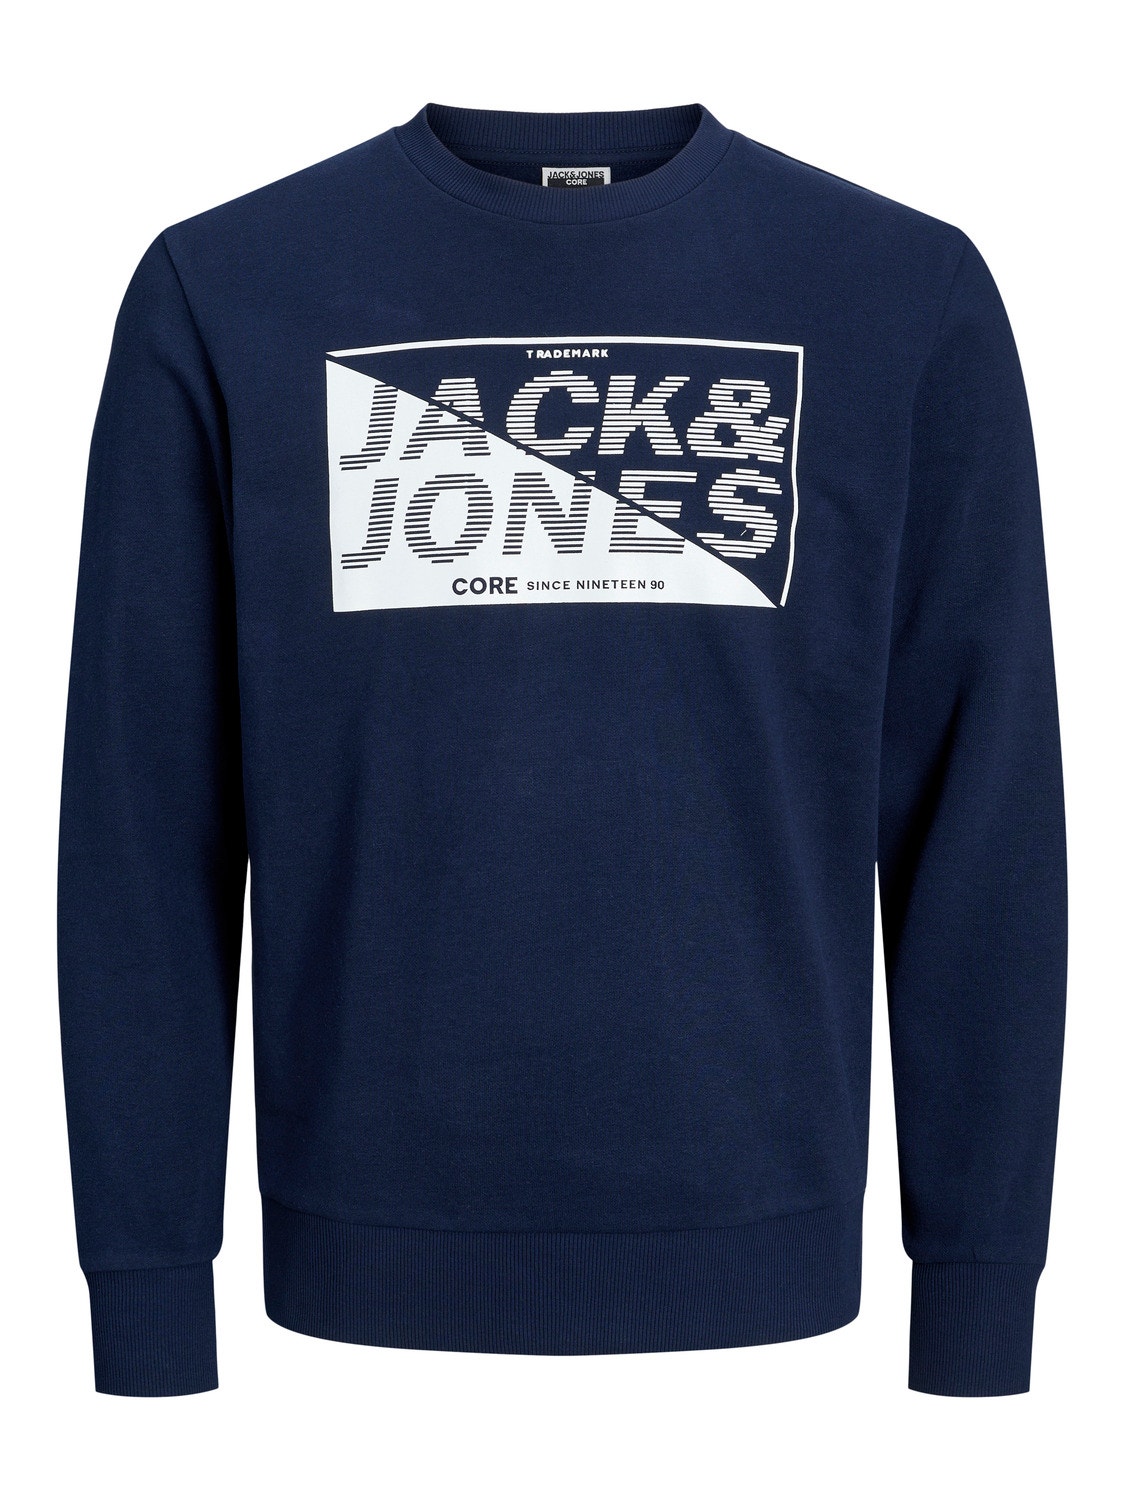 Jack & Jones Logo Sweatshirt mit Rundhals -Navy Blazer - 12243922